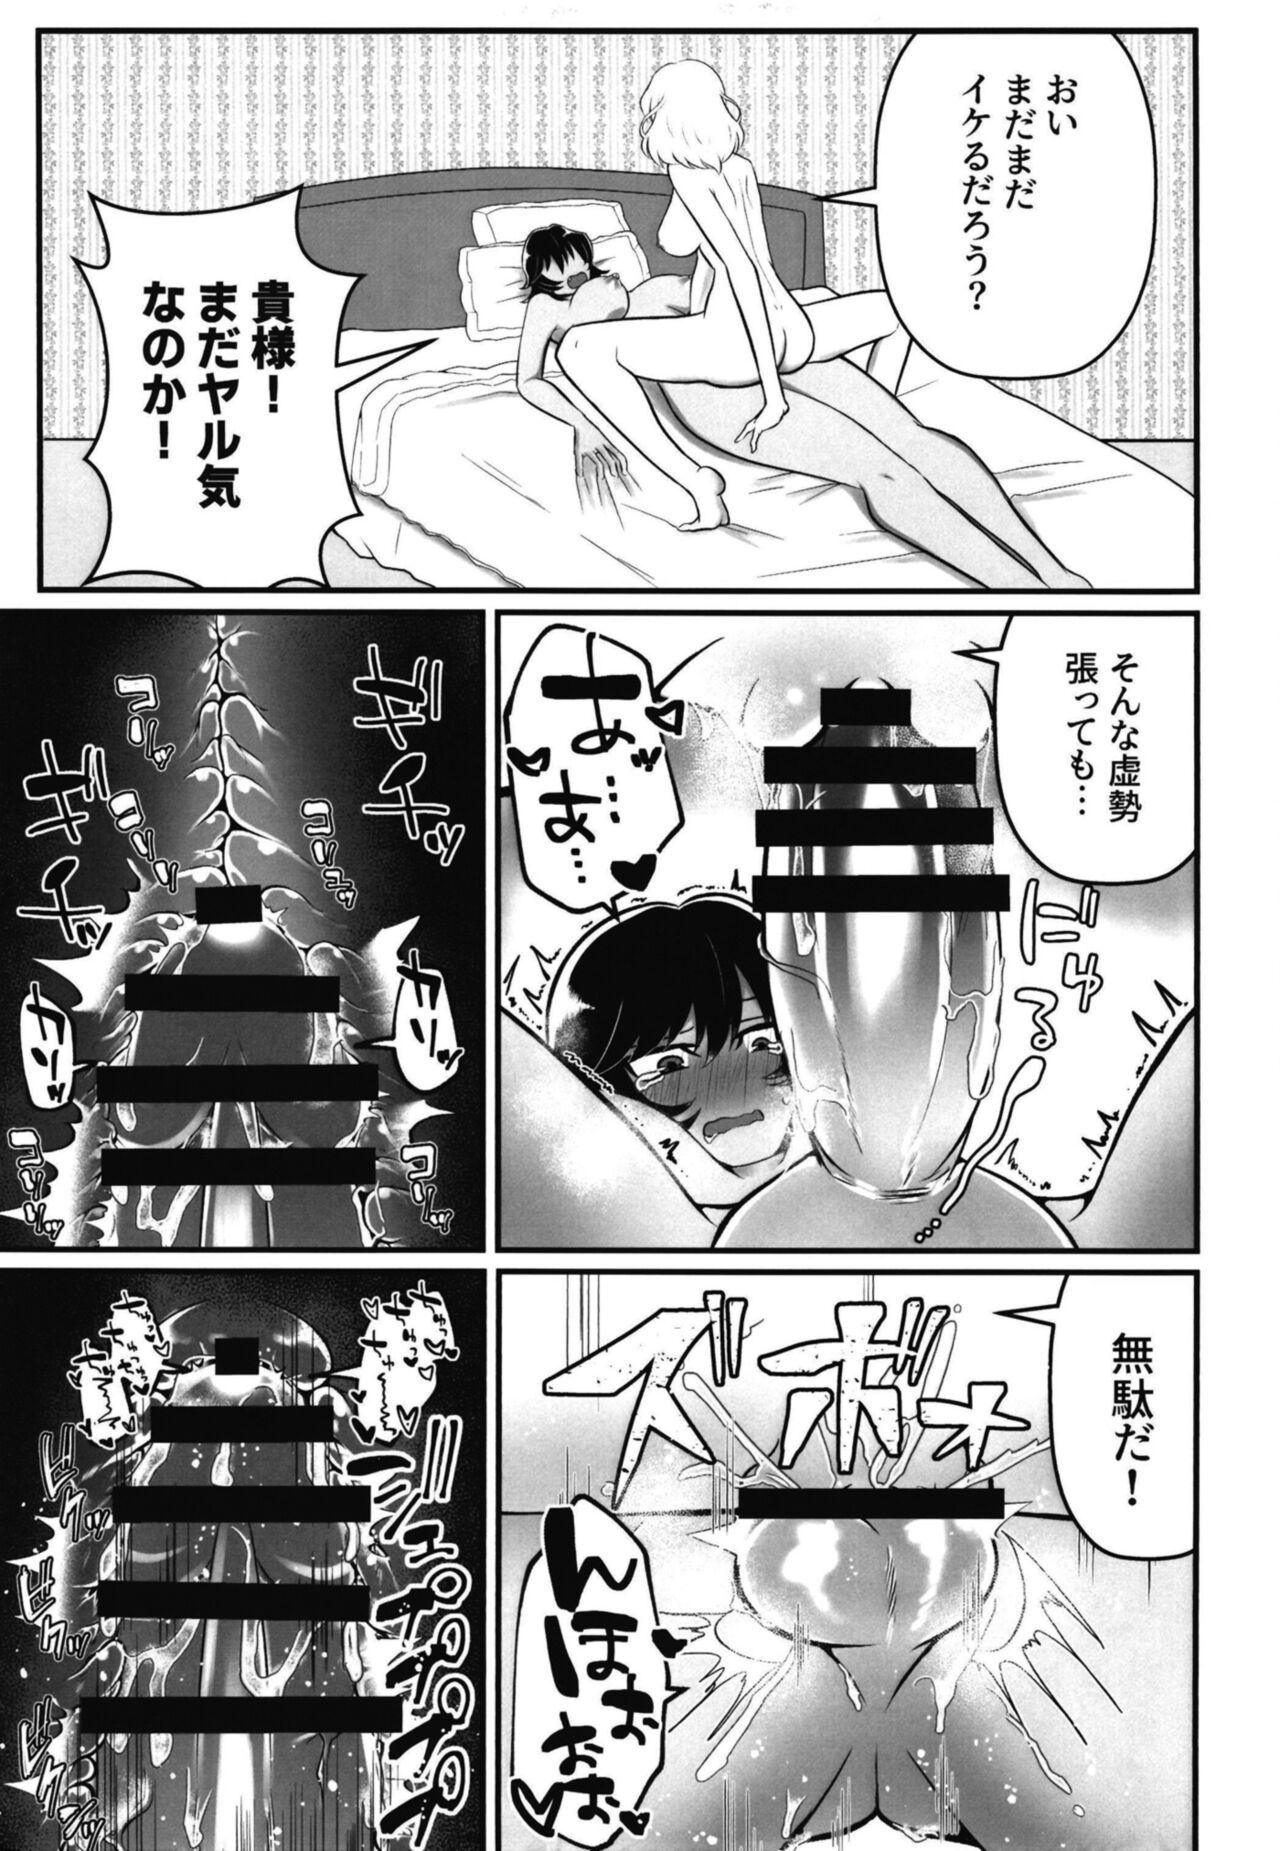 Boobs Panzer High! Futanari Road !! - Girls und panzer Desperate - Page 11